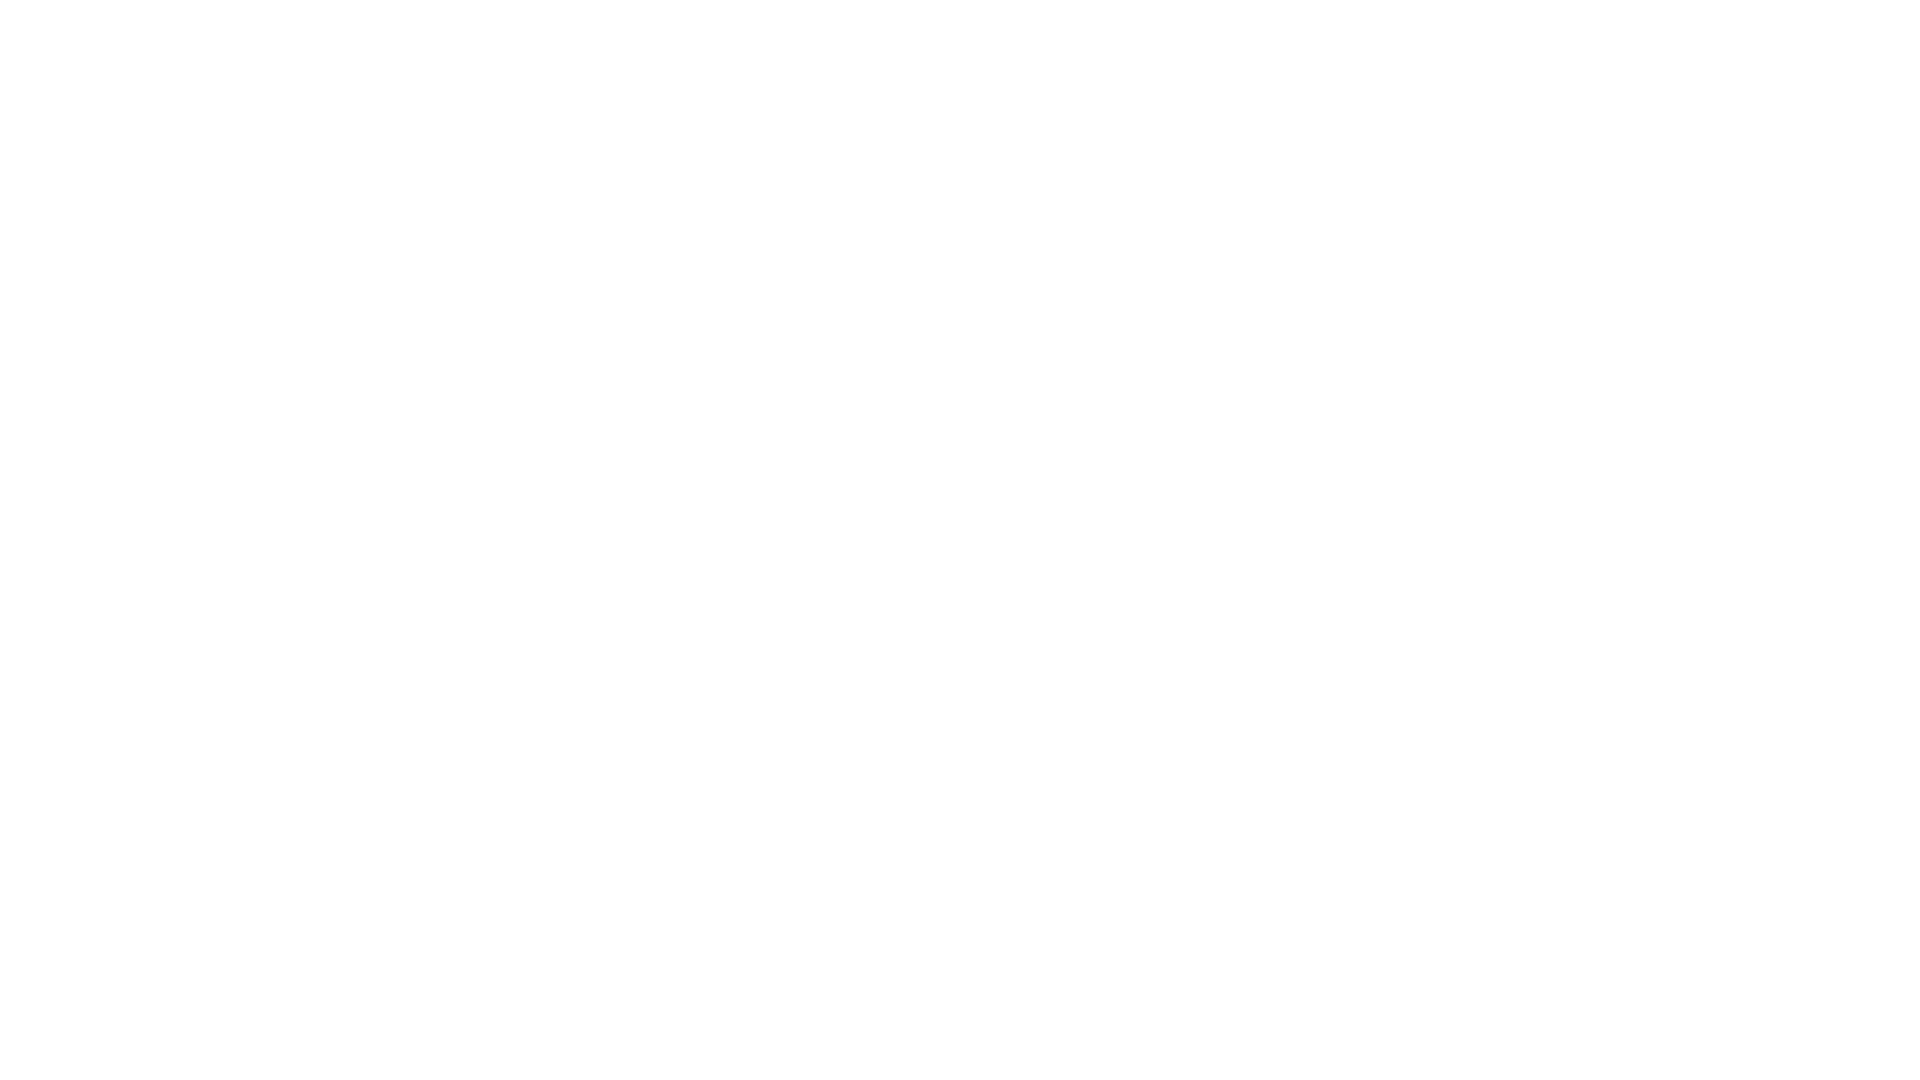 Logo del plan de recuperación, transformación y resiliencia en blanco